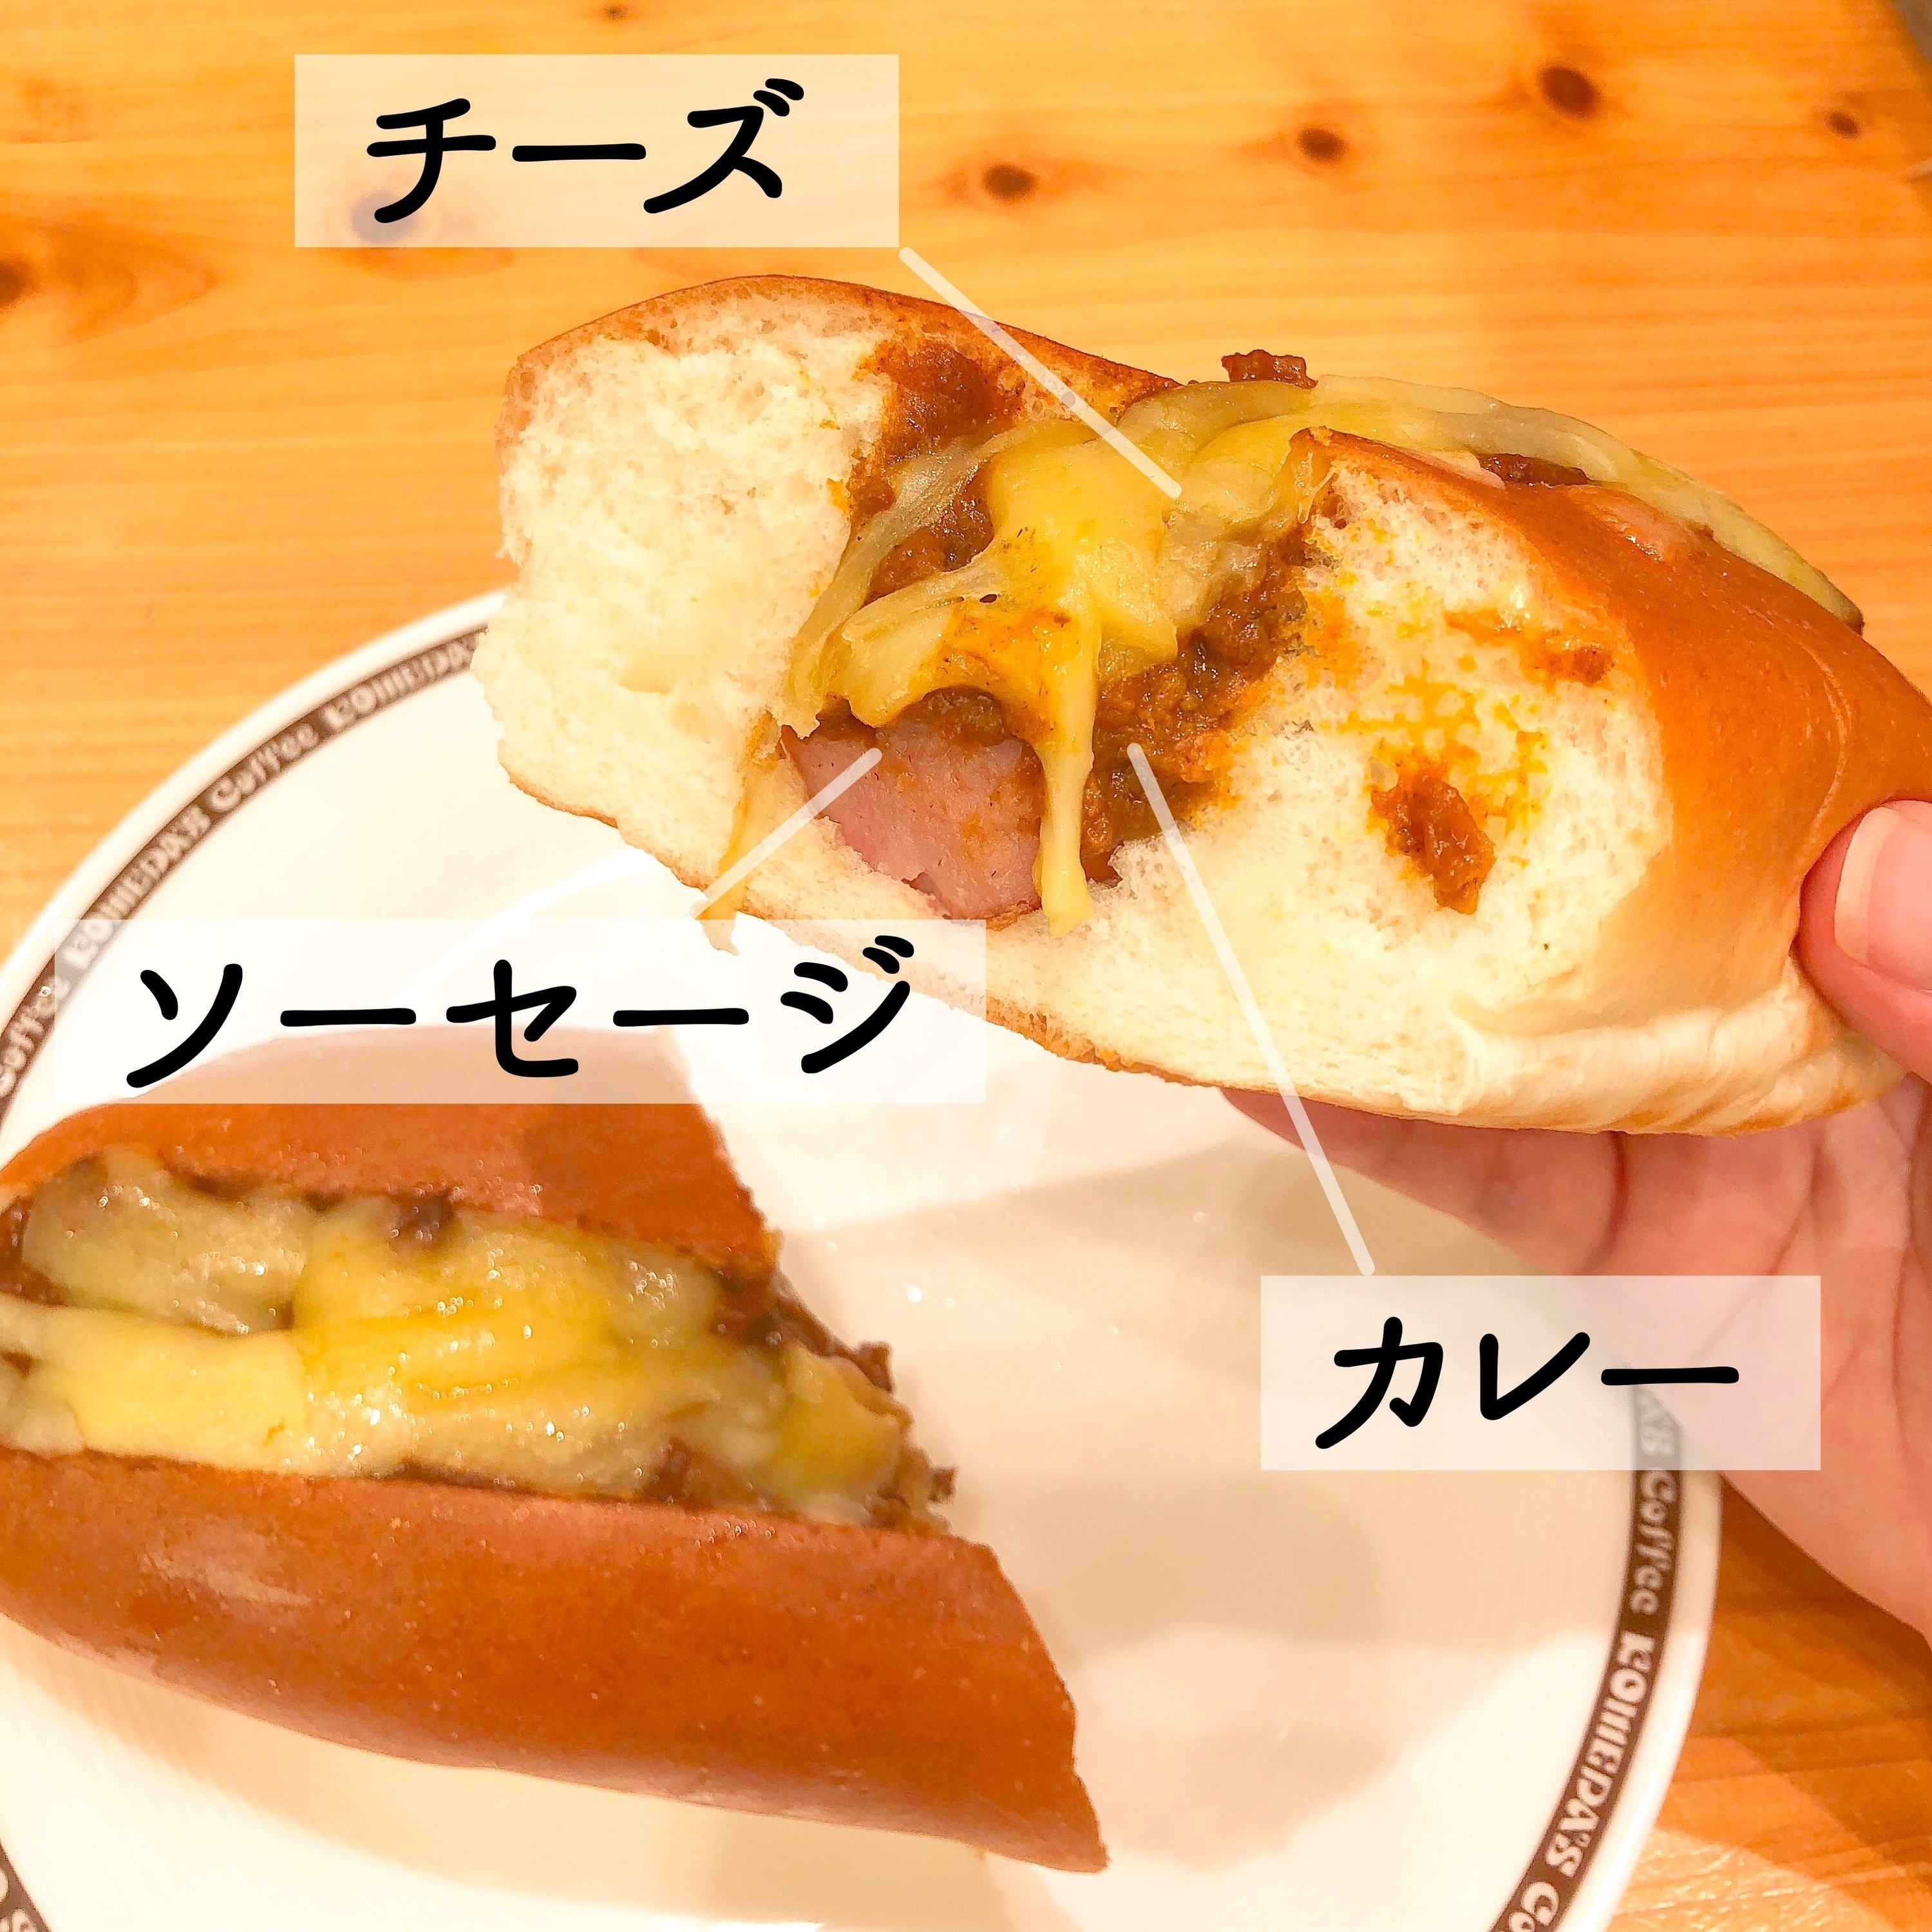 コメダ珈琲店のおすすめフードメニュー「チーズカリードッグ」